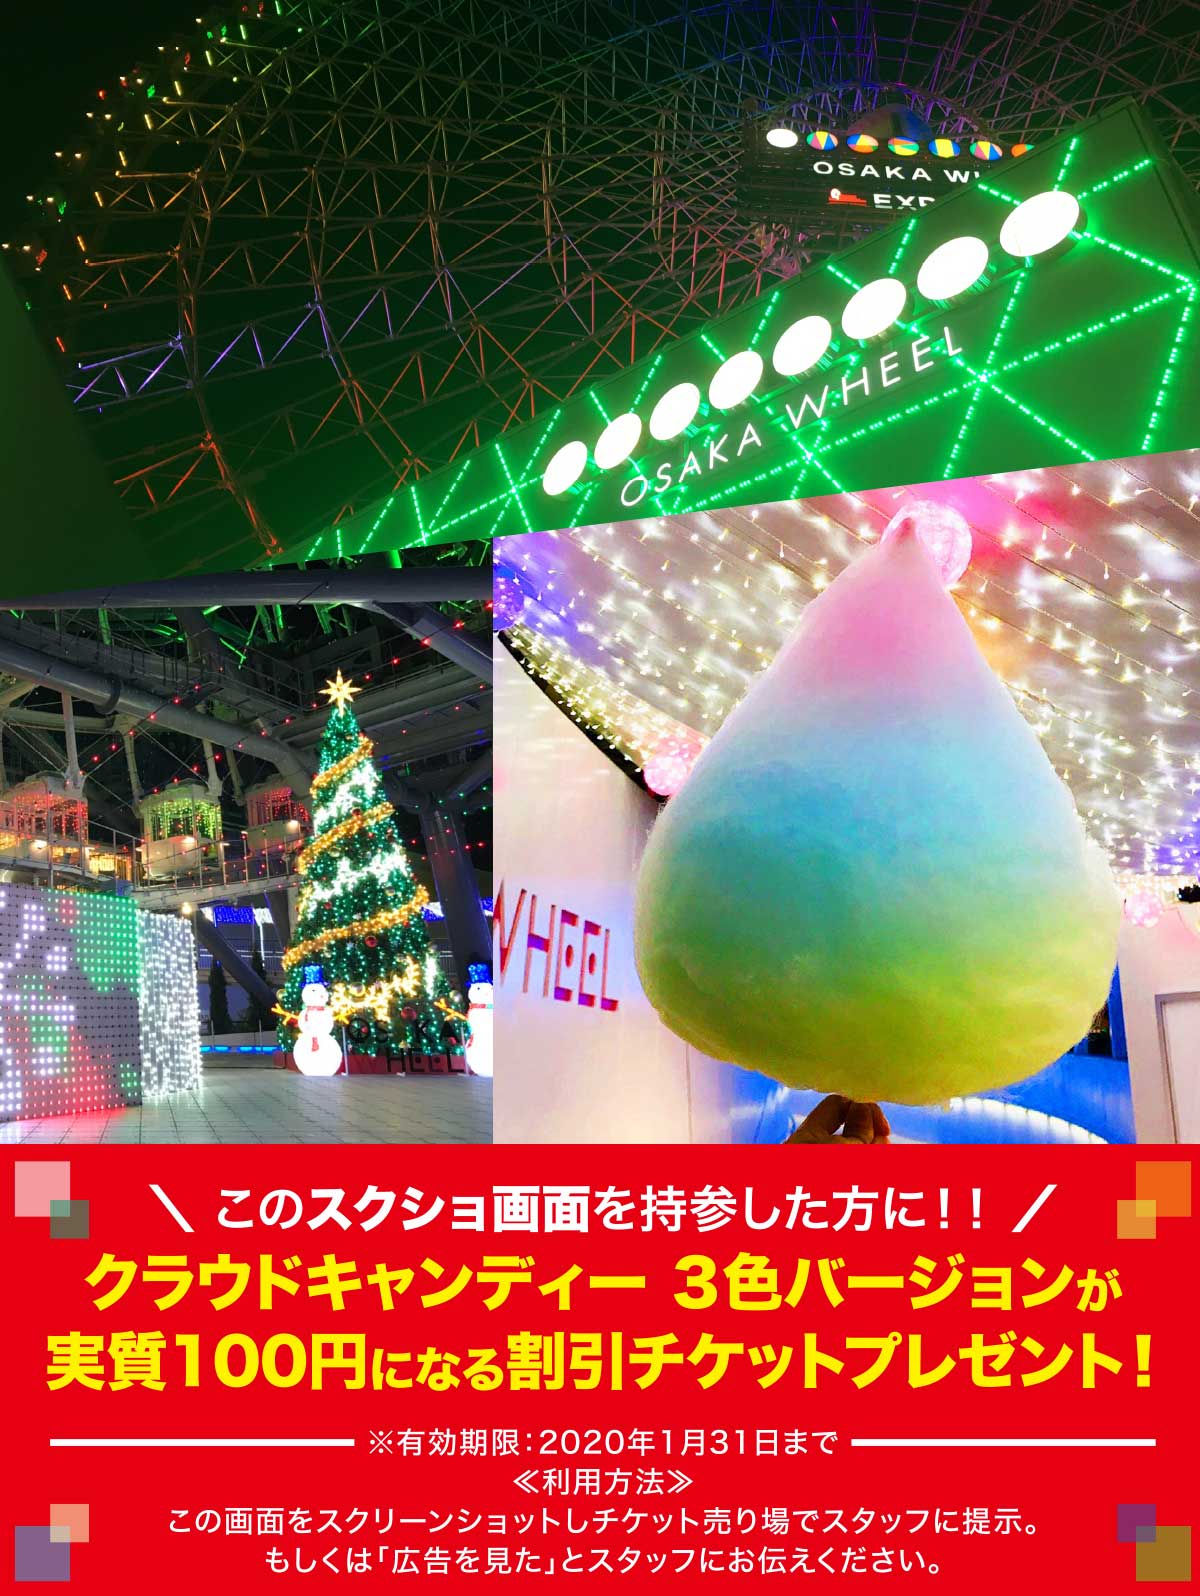 日本一の観覧車の上空で雲が食べられる 19年12月21日から新商品 Cloud Candy 販売を開始